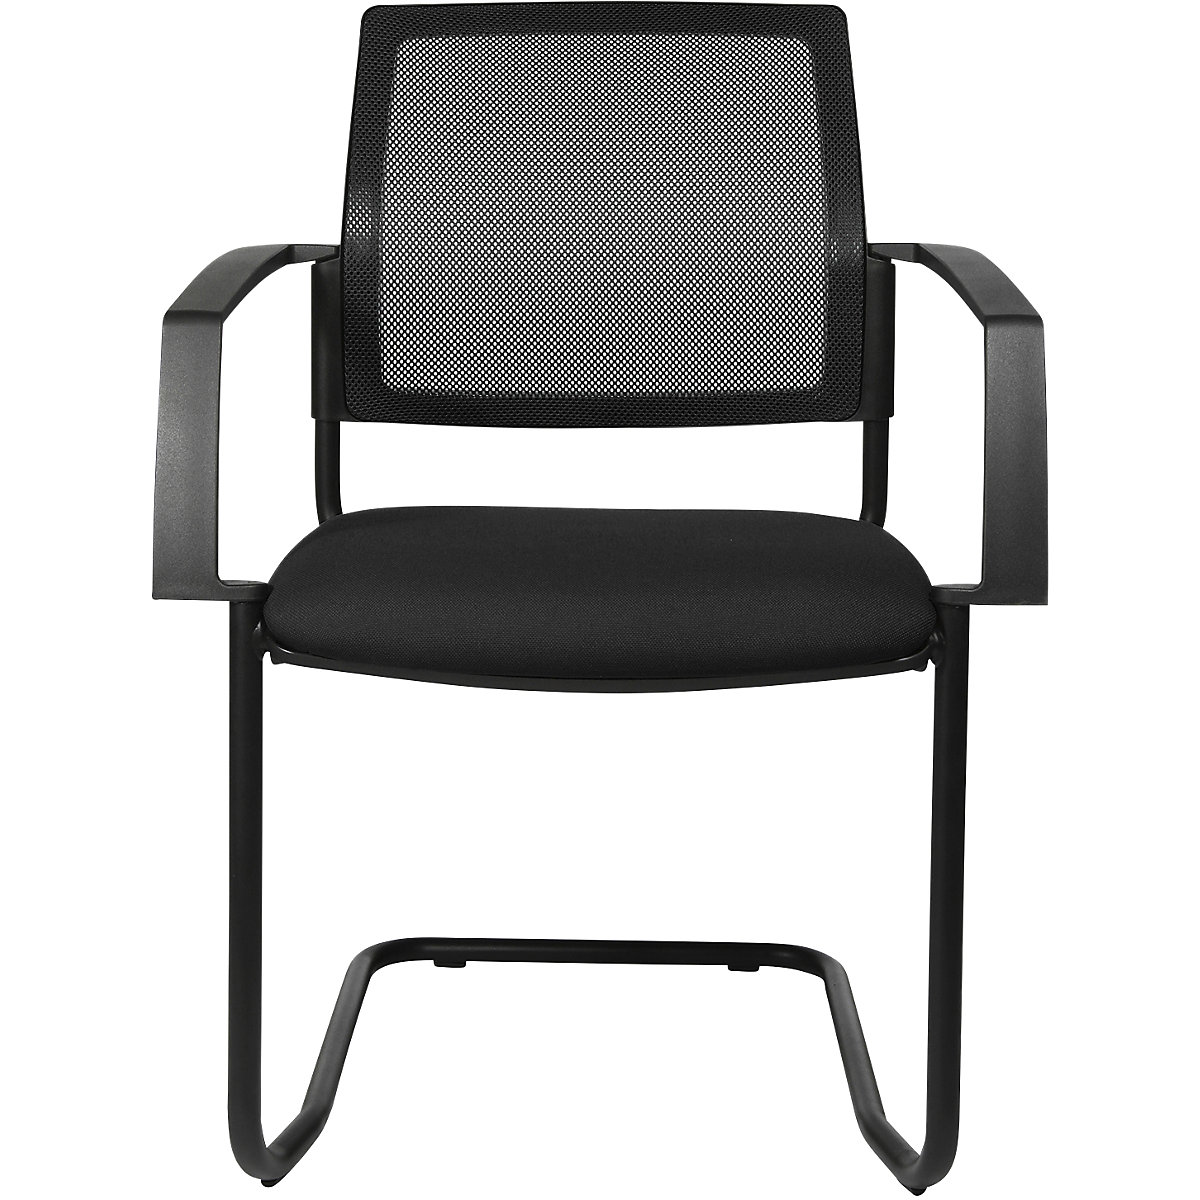 Mesh stapelstoel – Topstar, sledestoel, VE = 2 stuks, zitting zwart, frame zwart-8